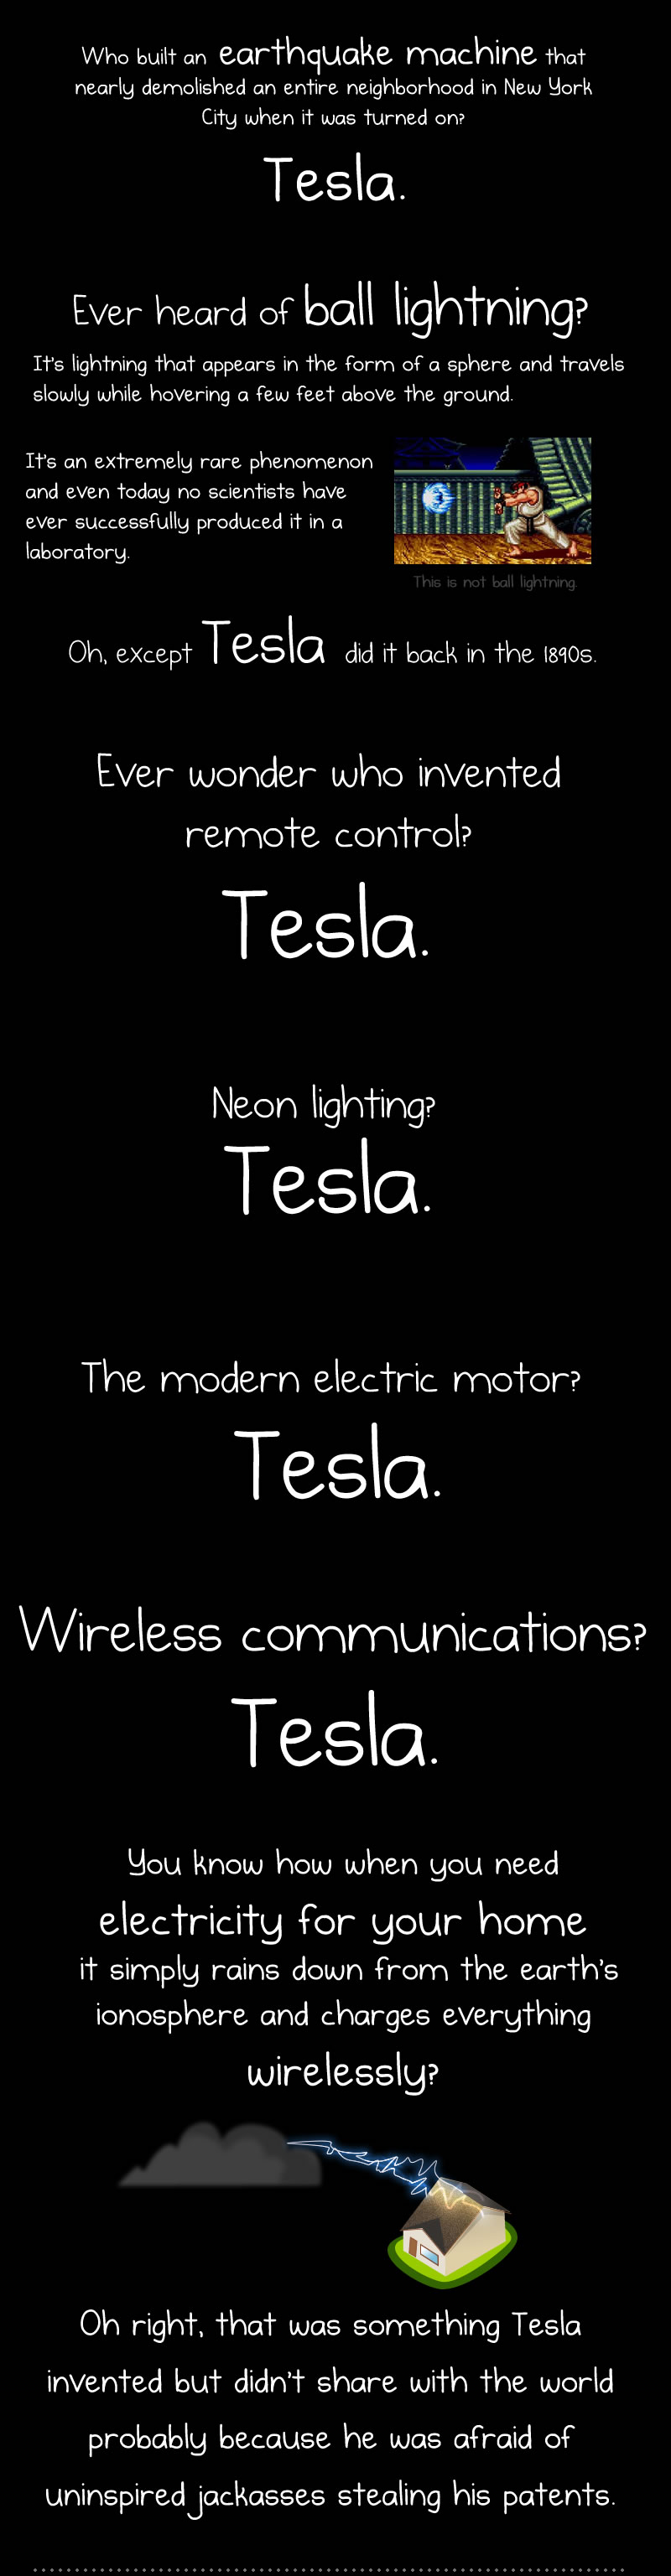 Nikola Tesla Day